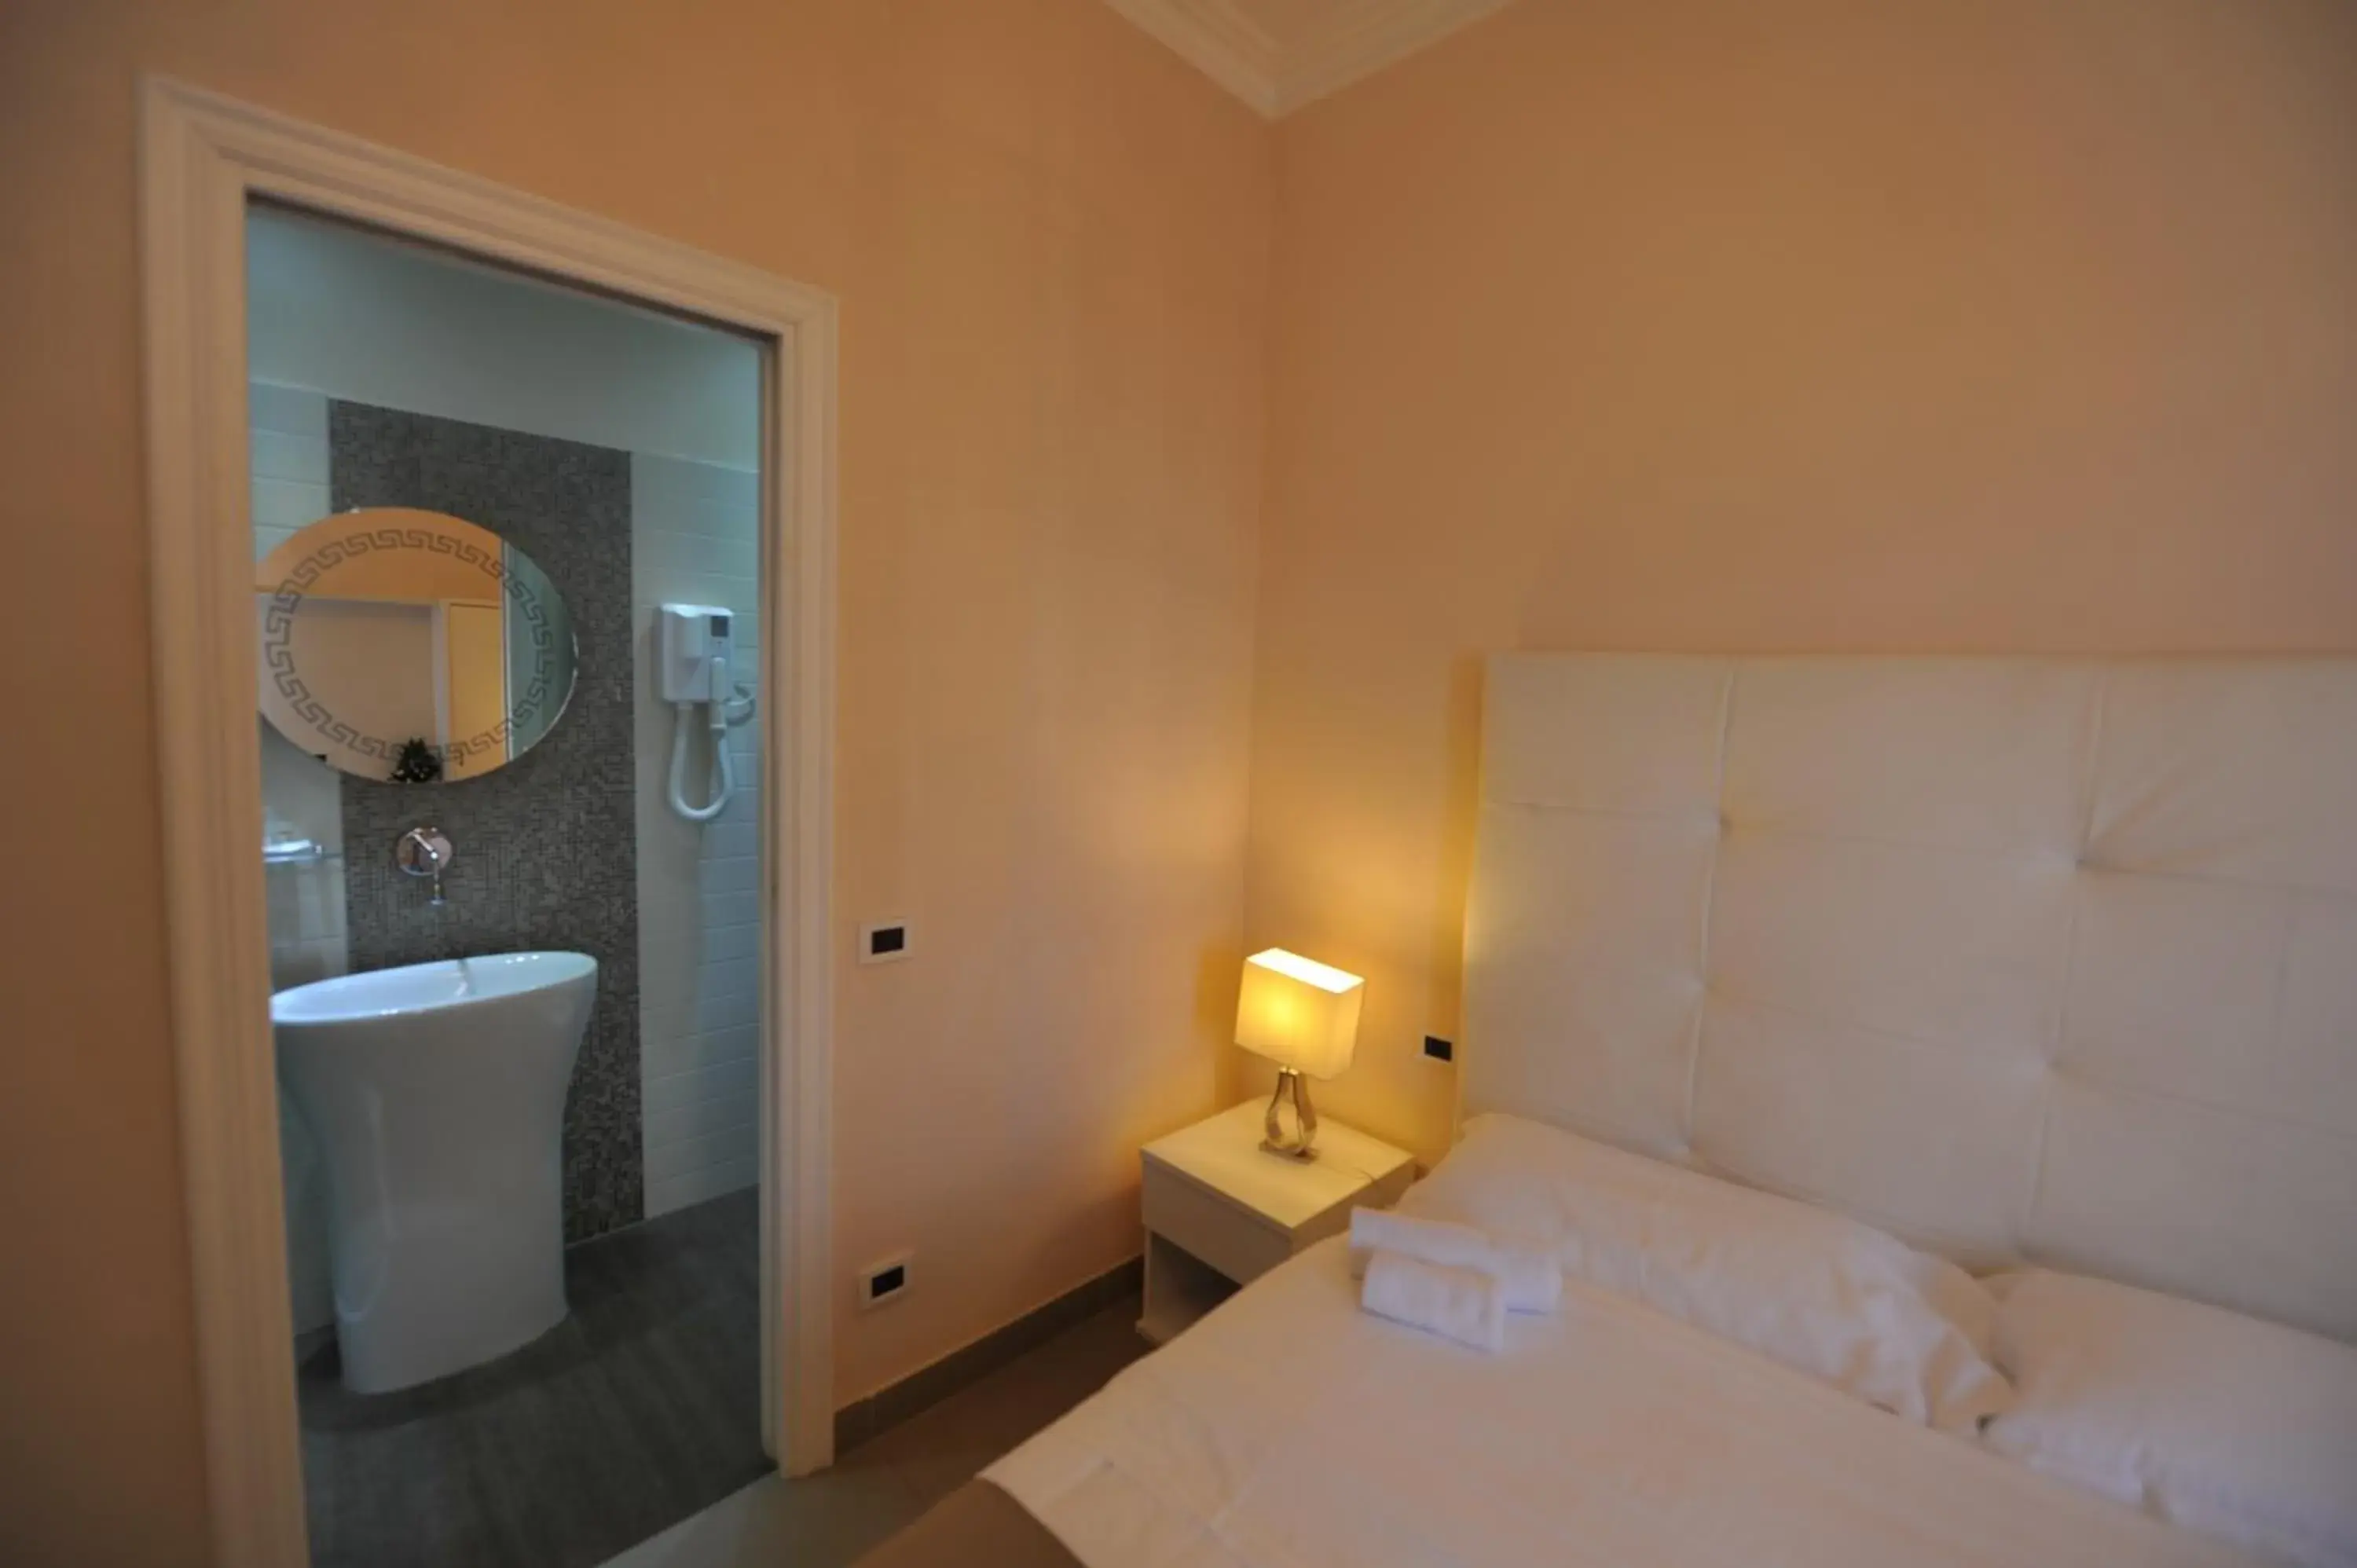 Photo of the whole room, Bathroom in Villa Zaccardi